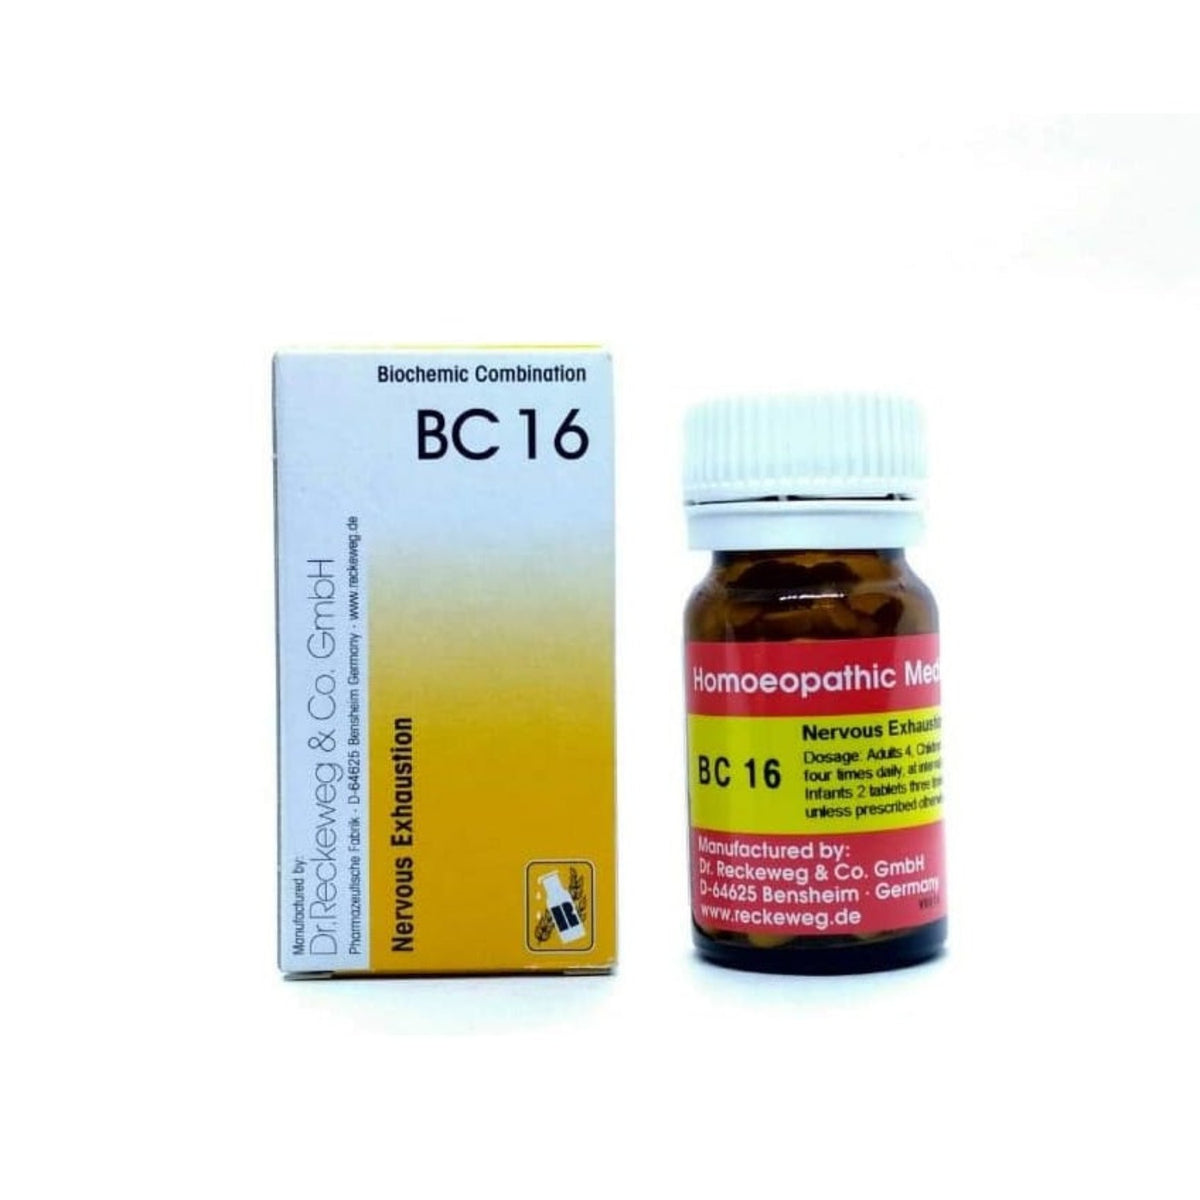 Dr. Reckeweg Homöopathie Nervöse Erschöpfung Bio-Kombination 16 (BC 16) 20 g Tablette